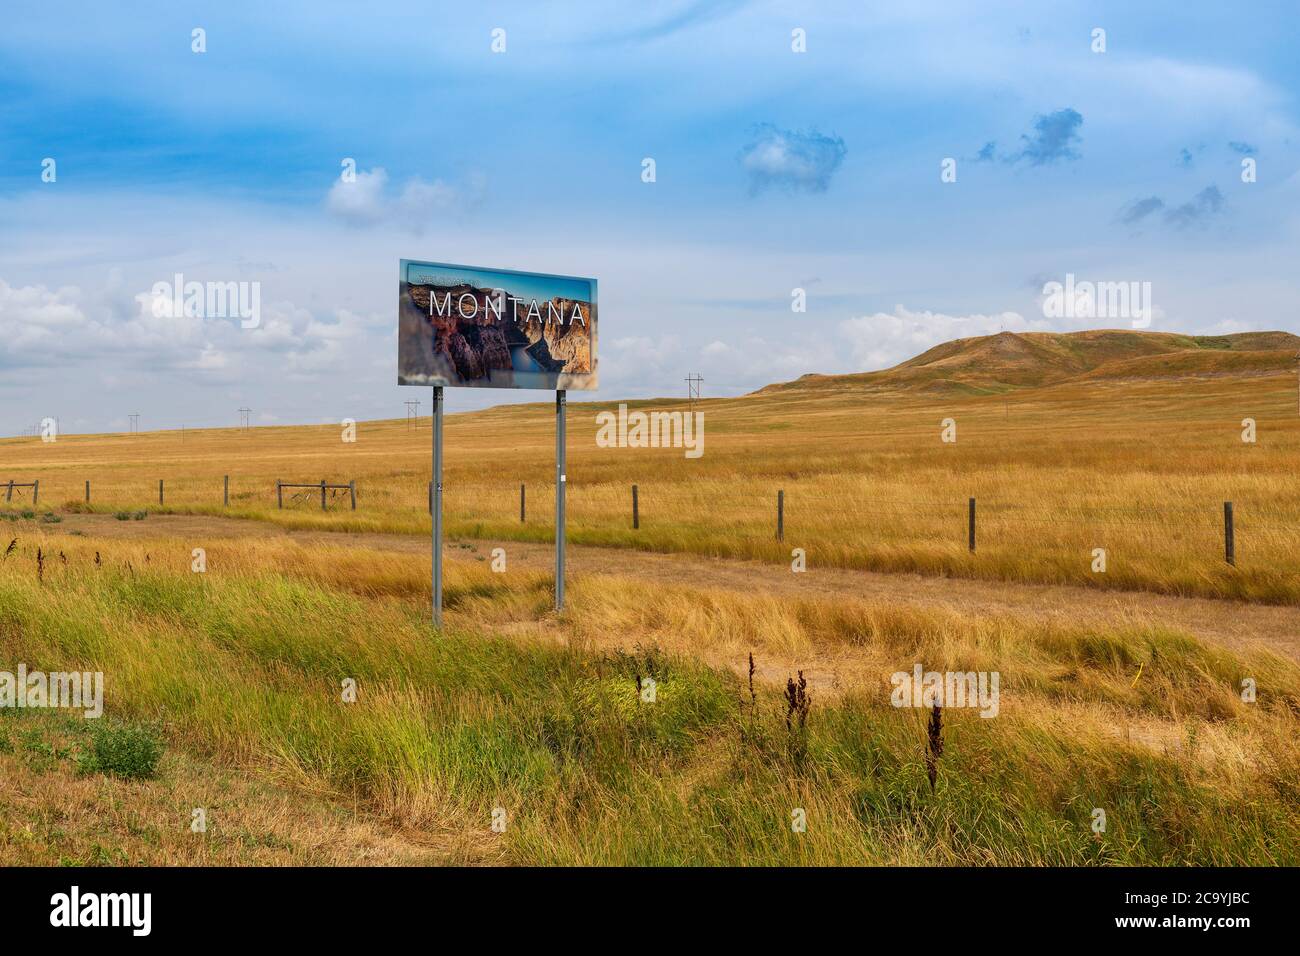 Montana, États-Unis - 8 août 2014 : panneau de bienvenue de l'État du Montana le long de l'US Highway 212 aux États-Unis. Banque D'Images